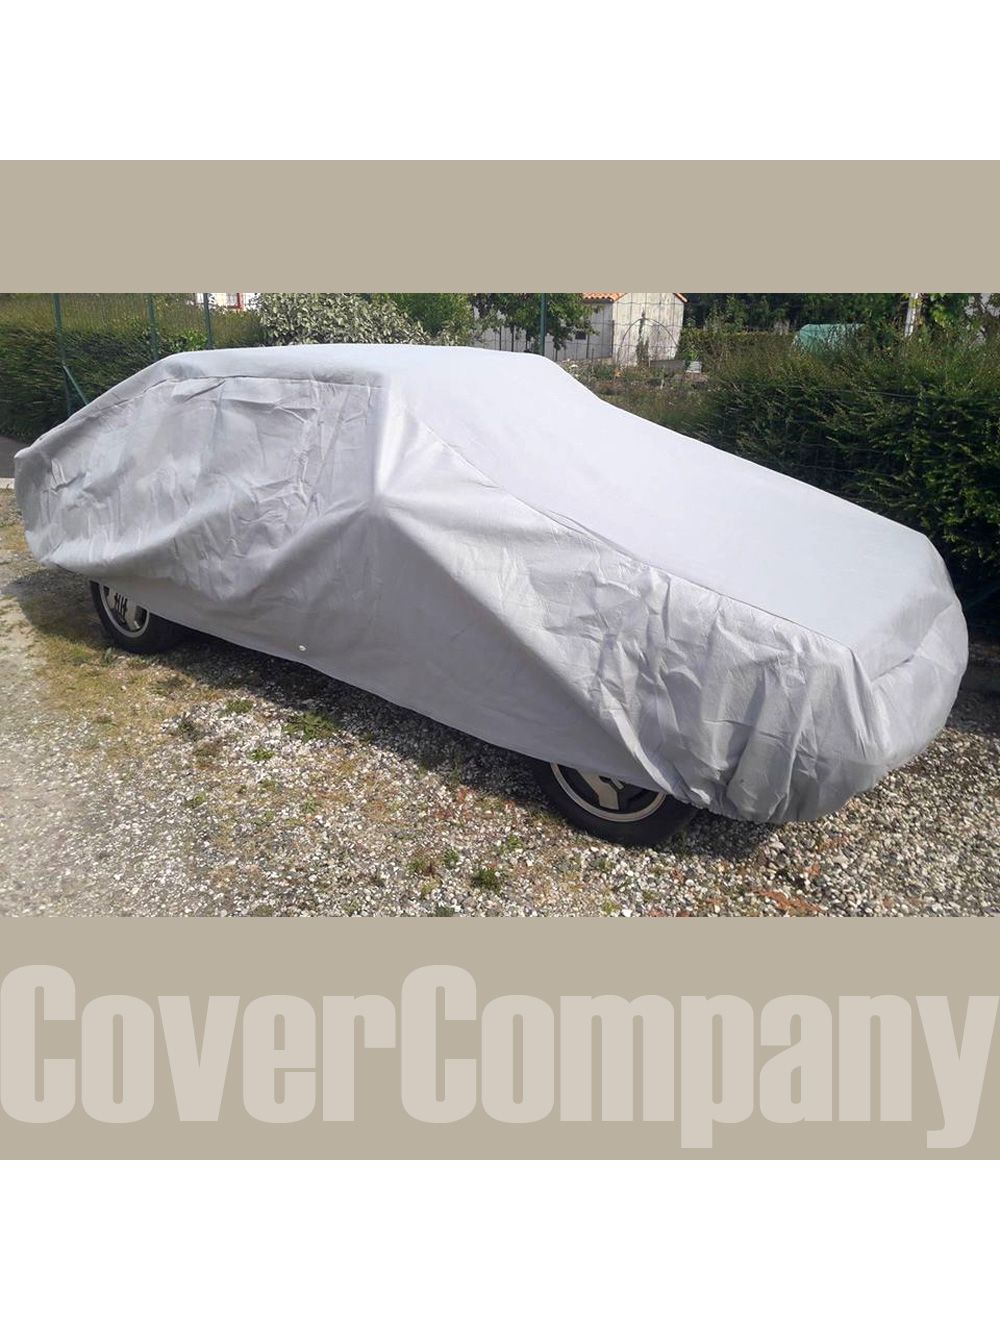 Standard Rainproof Car Cover - Outdoor Bronze Range